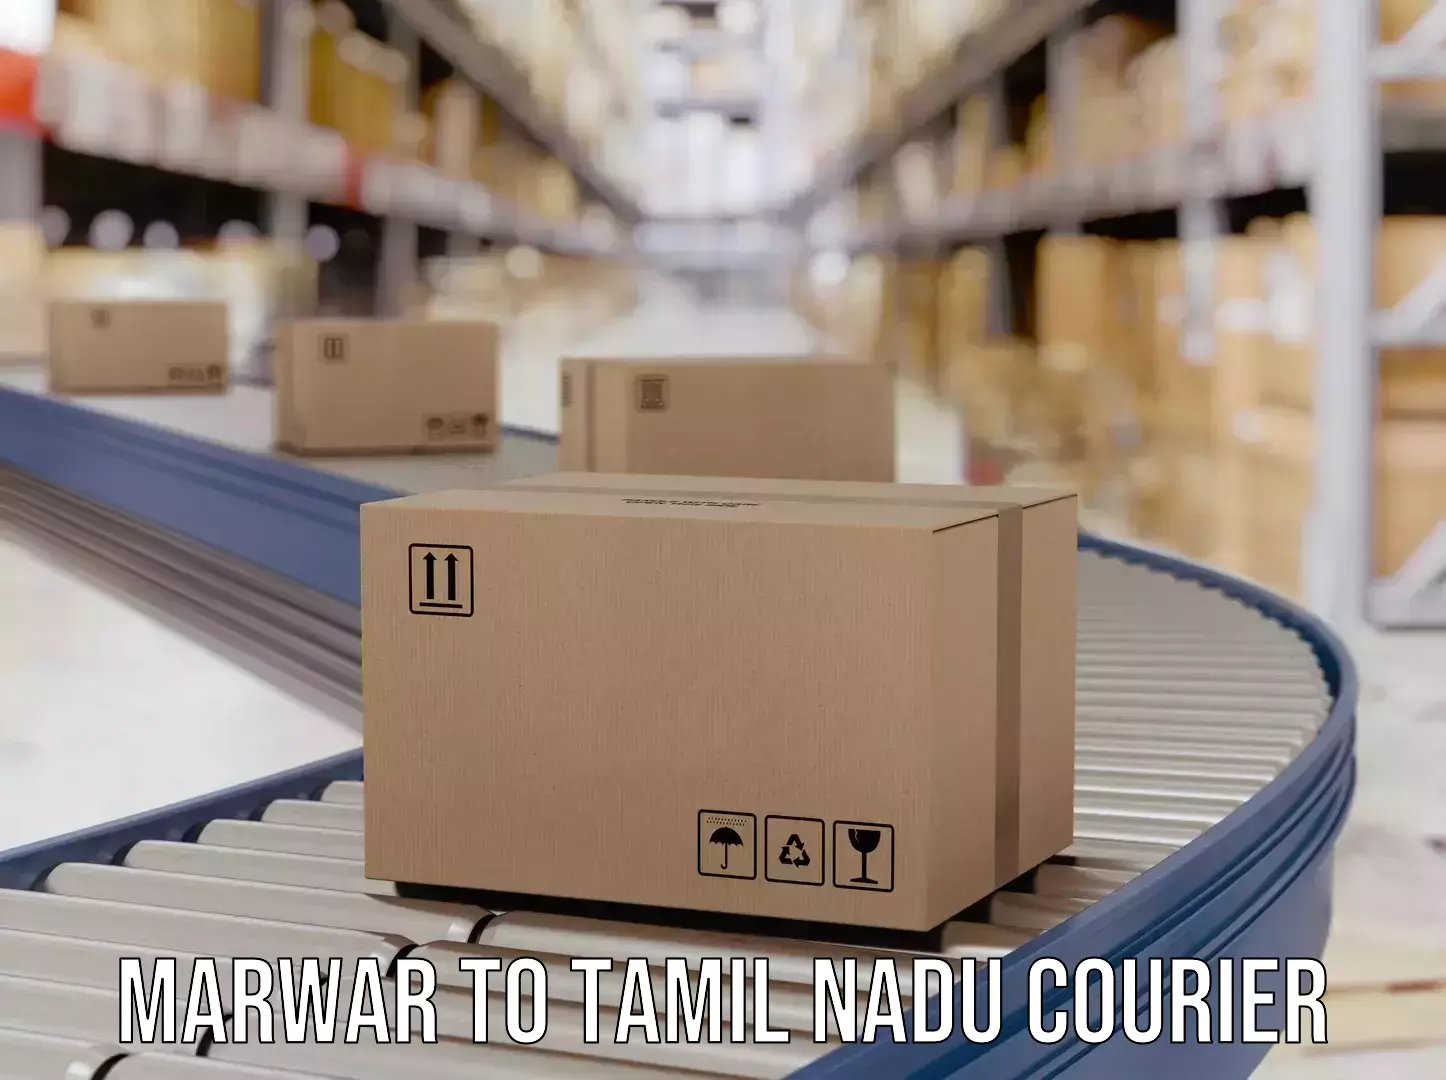 Courier service comparison Marwar to Tirukalukundram